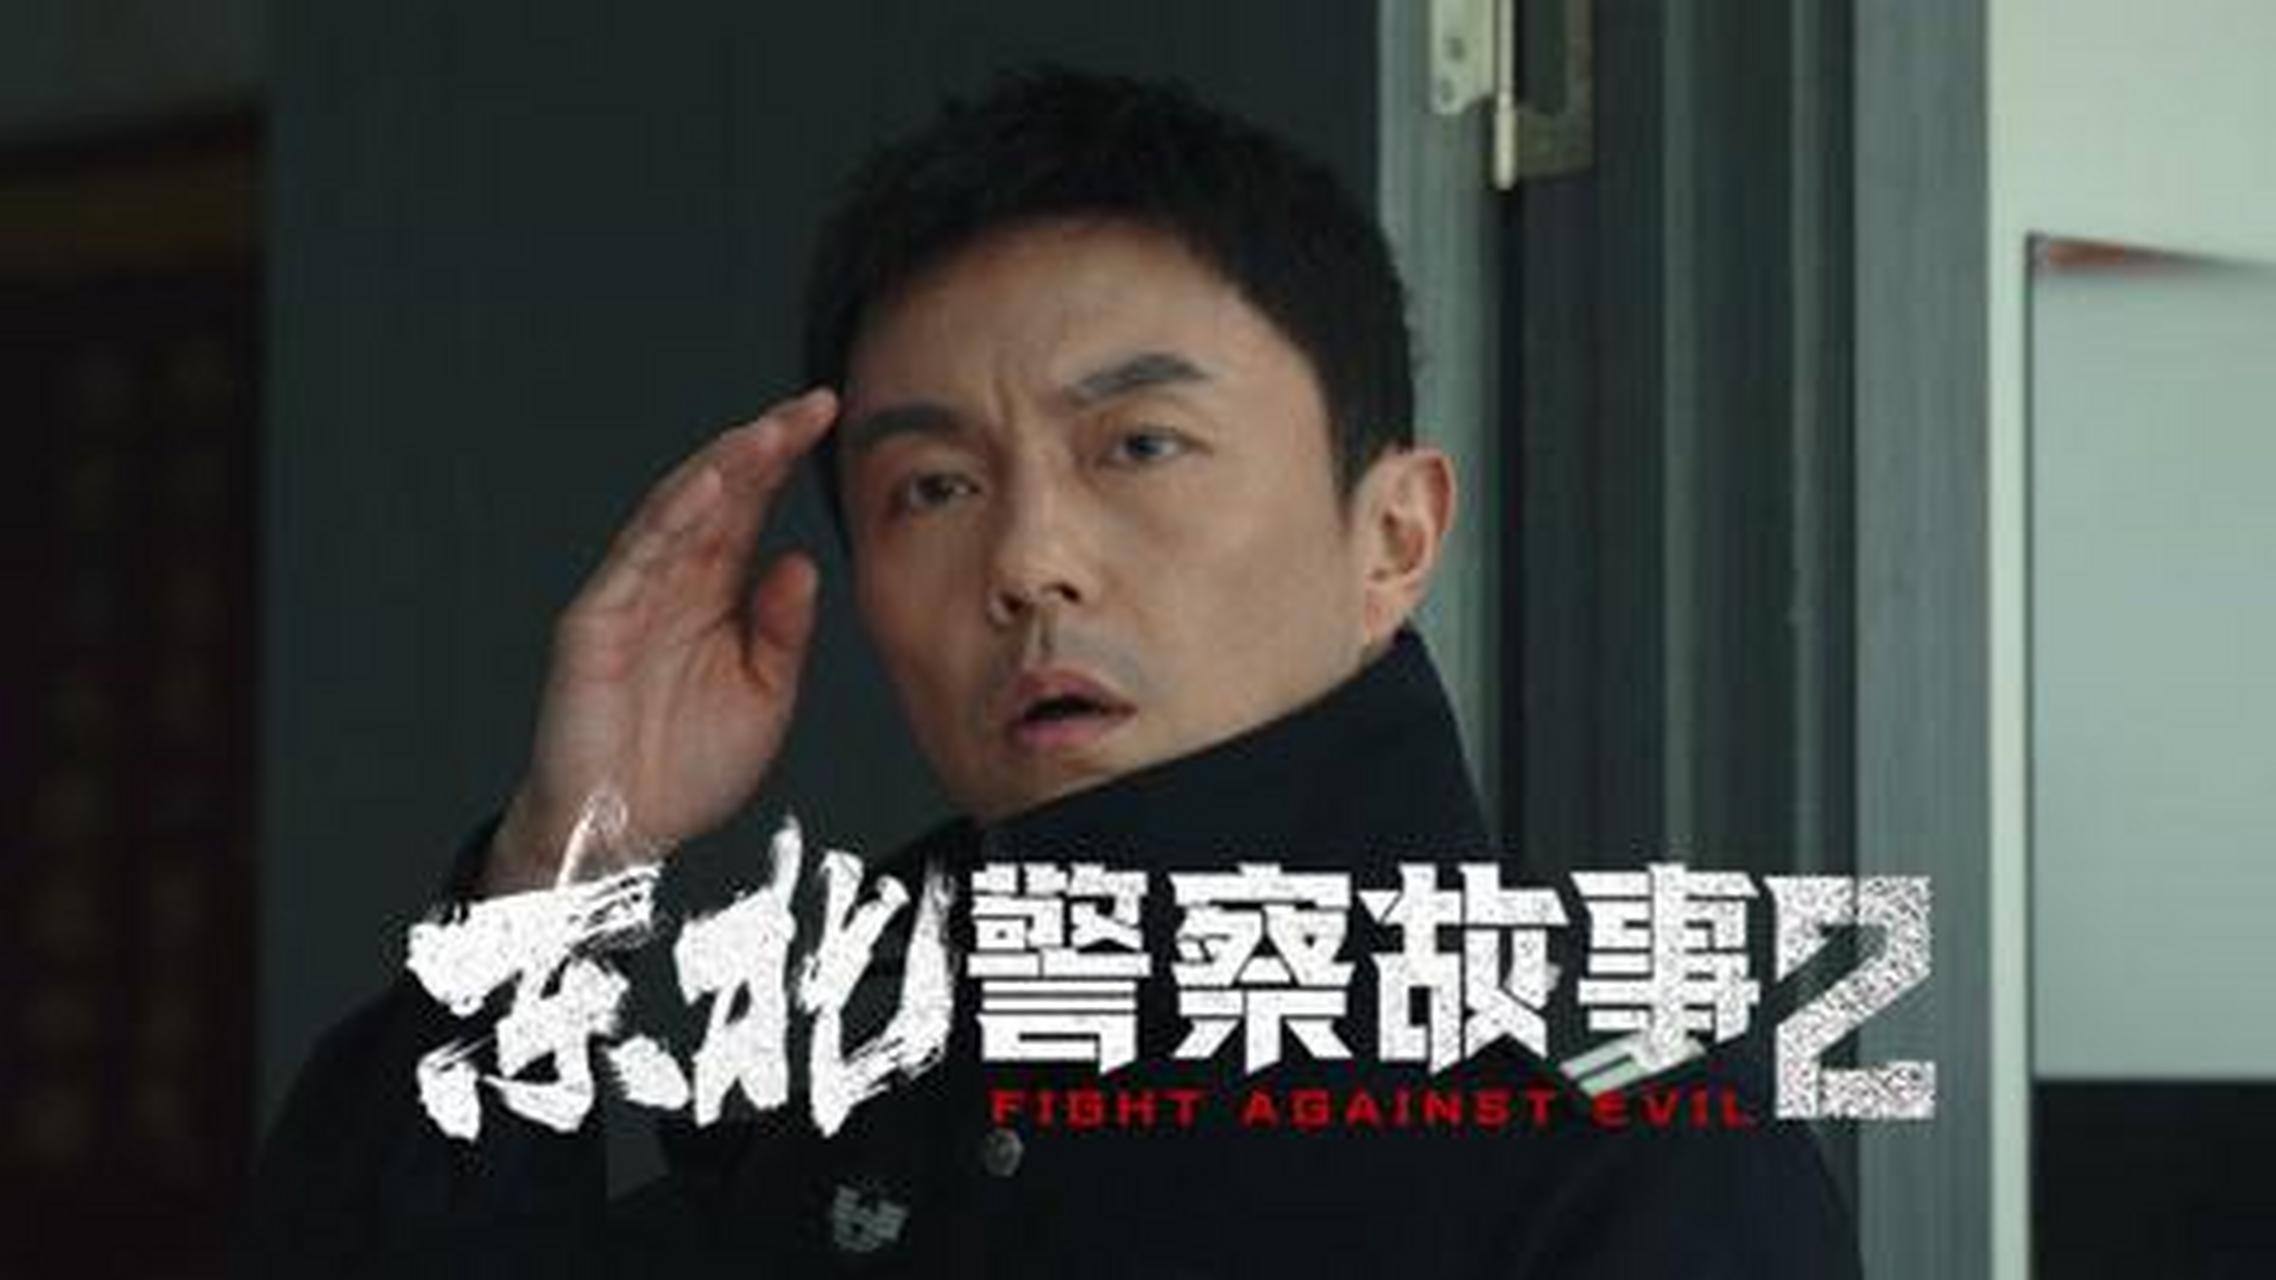 7月8日,备受期待的由谢苗主演的电影《东北警察故事2》正式在某平台